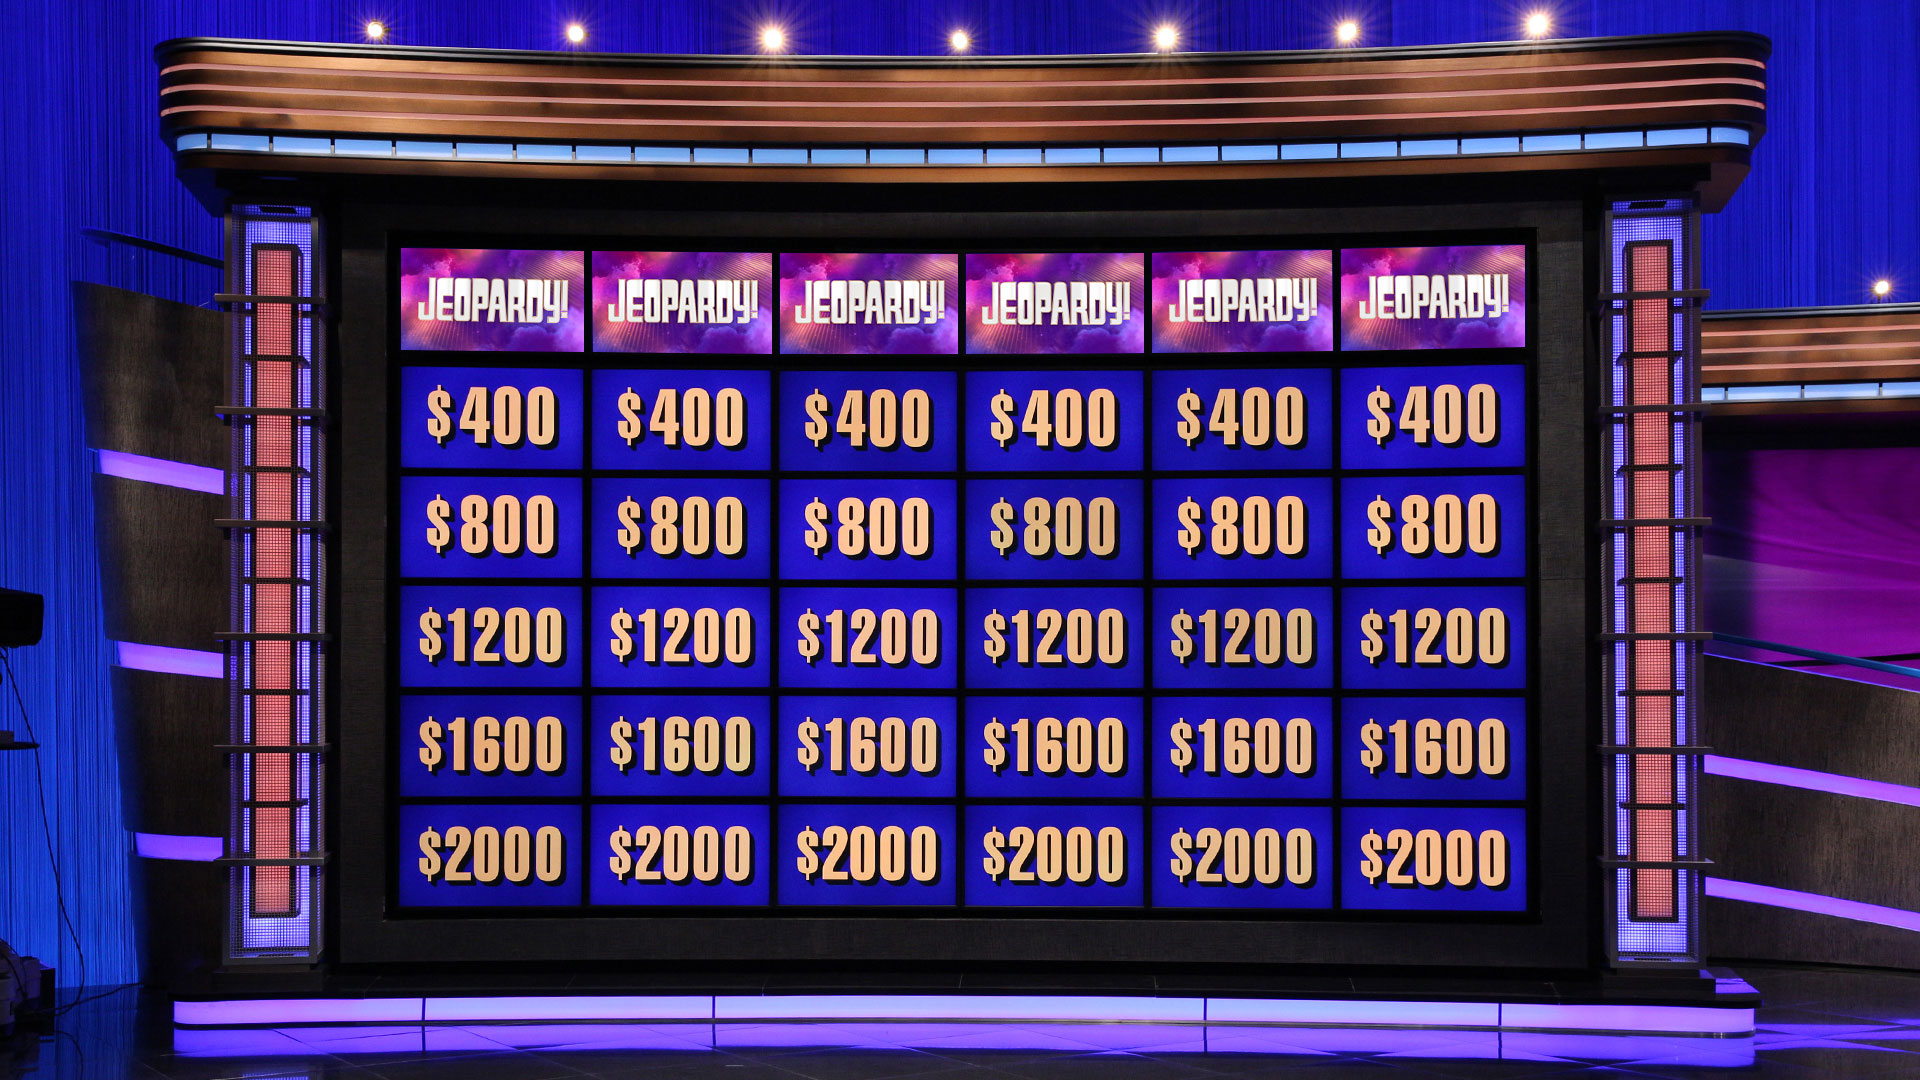 Hình nền Zoom Jeopardy! sẽ khiến không gian chơi trò chơi của bạn thêm phần sôi động và hấp dẫn. Với nhiều phiên bản và màu sắc khác nhau, bạn có thể dễ dàng tìm ra hình nền phù hợp với chủ đề của trò chơi của bạn.